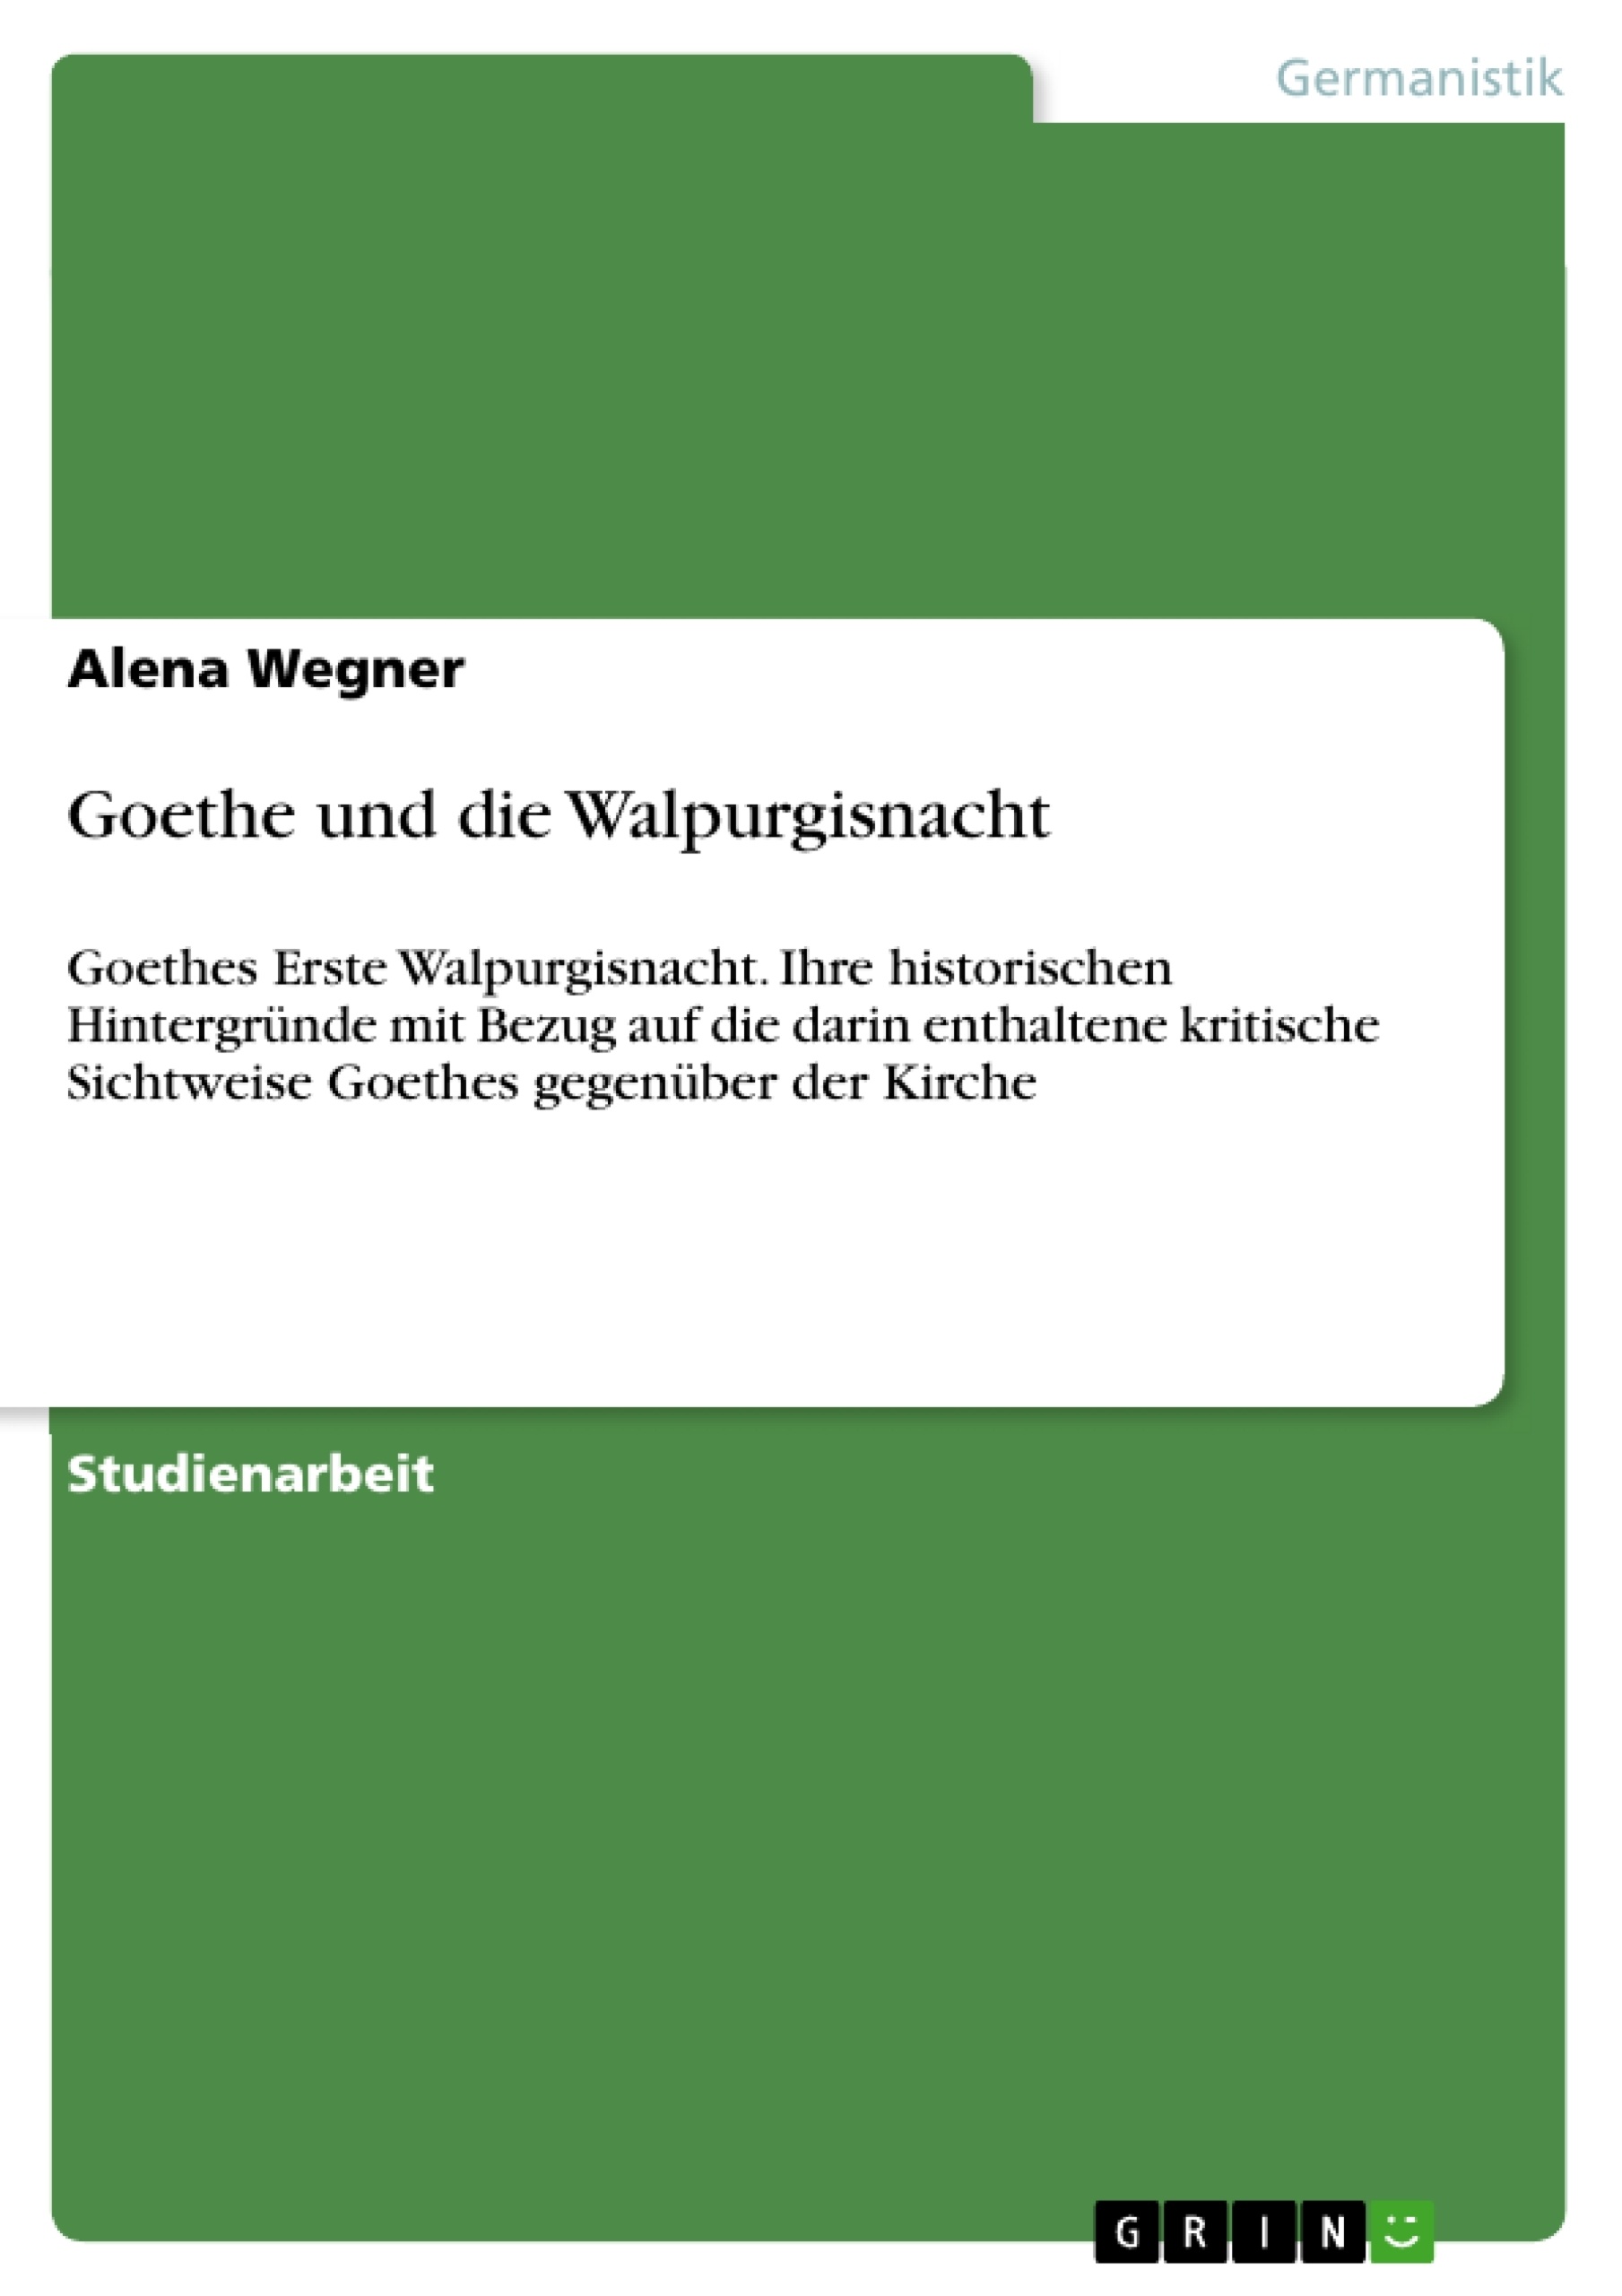 Title: Goethe und die Walpurgisnacht